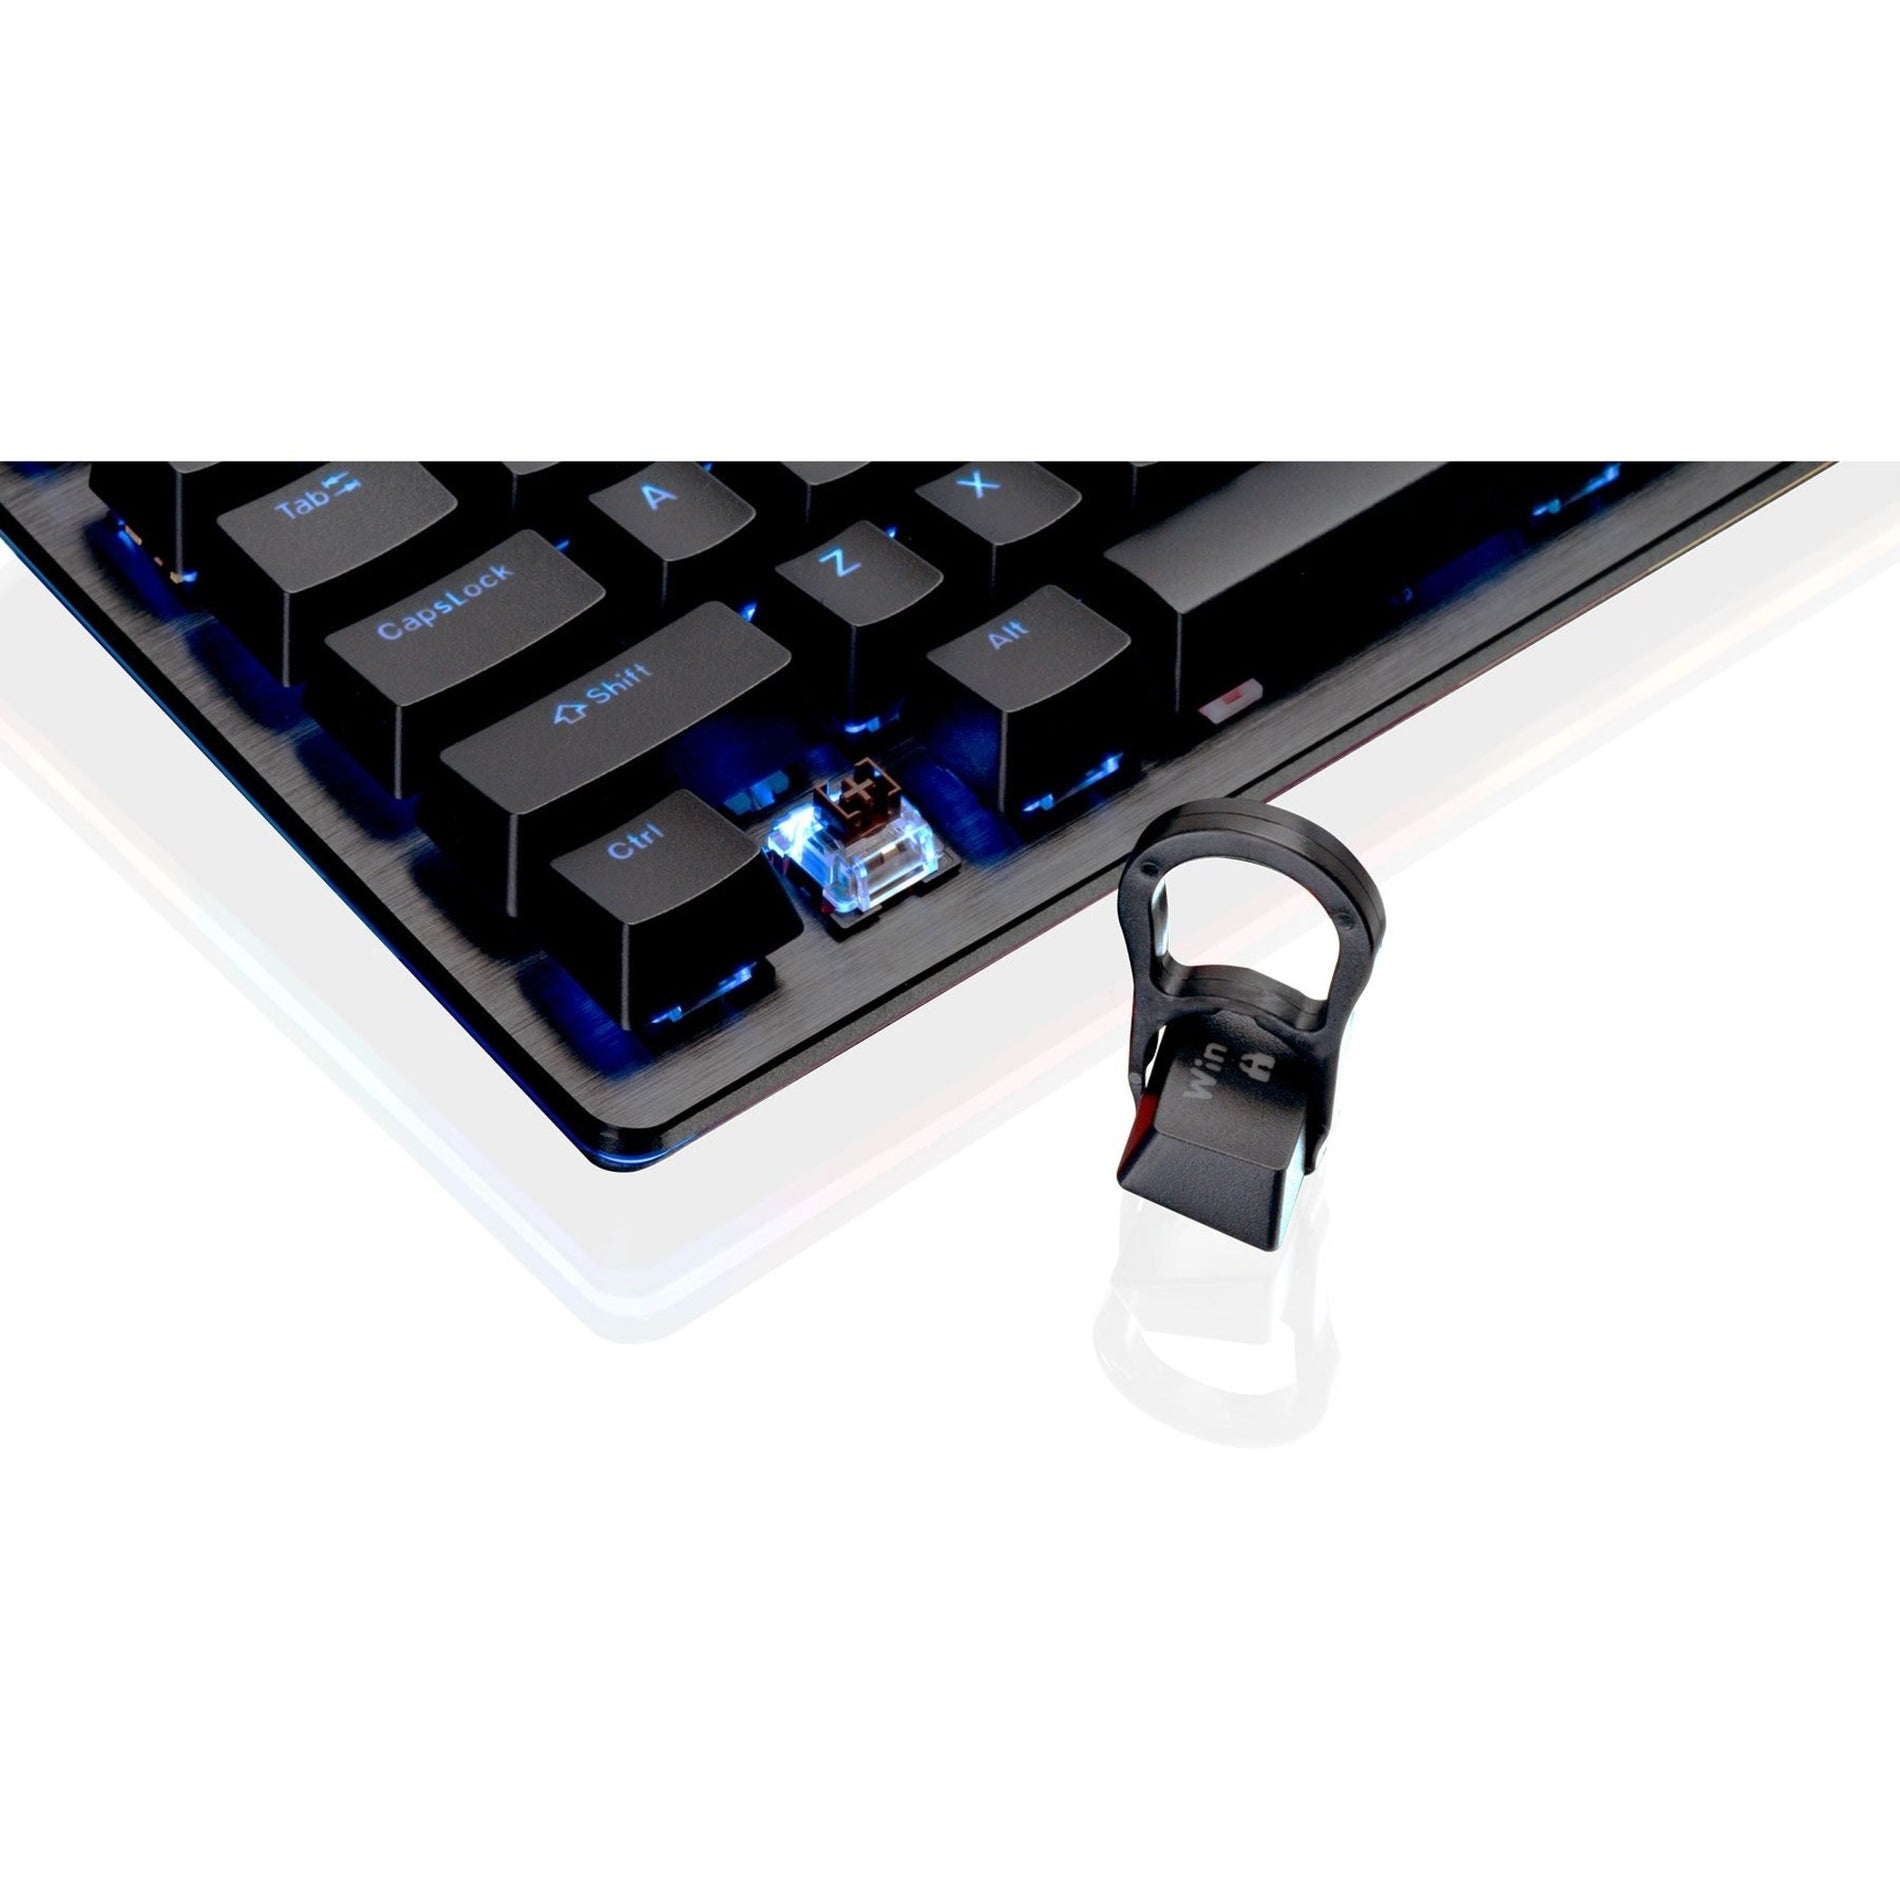 Kaliber Gaming GKB740 HVER STEALTH Gaming Keyboard, Mechanical Keys, RGB Backlighting